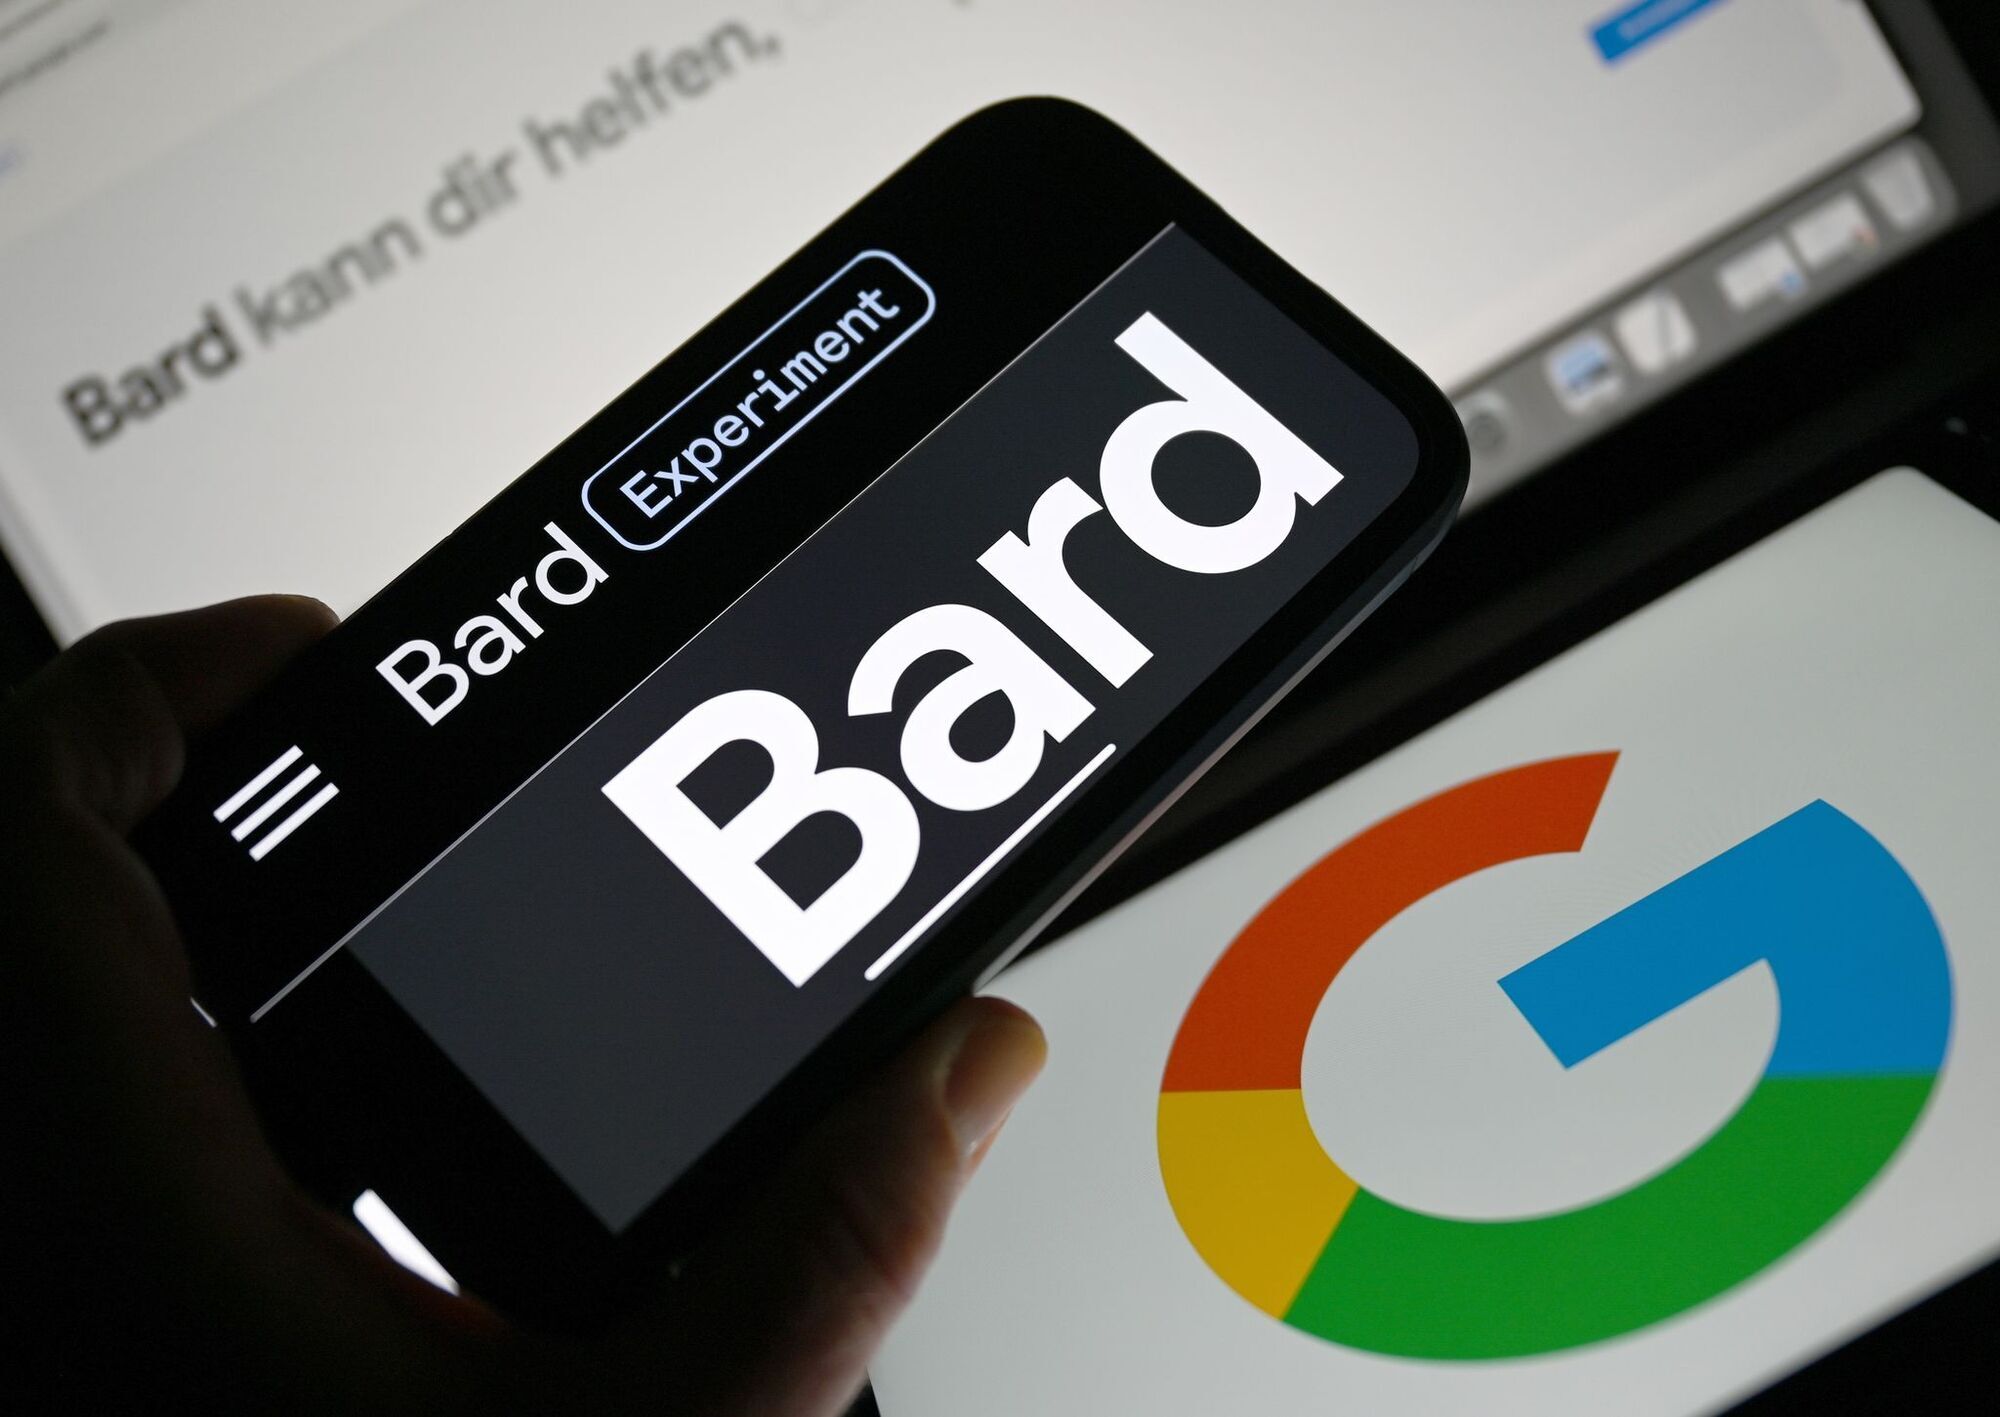 Google Bard kann jetzt sprechen, aber kann es ChatGPT übertönen?